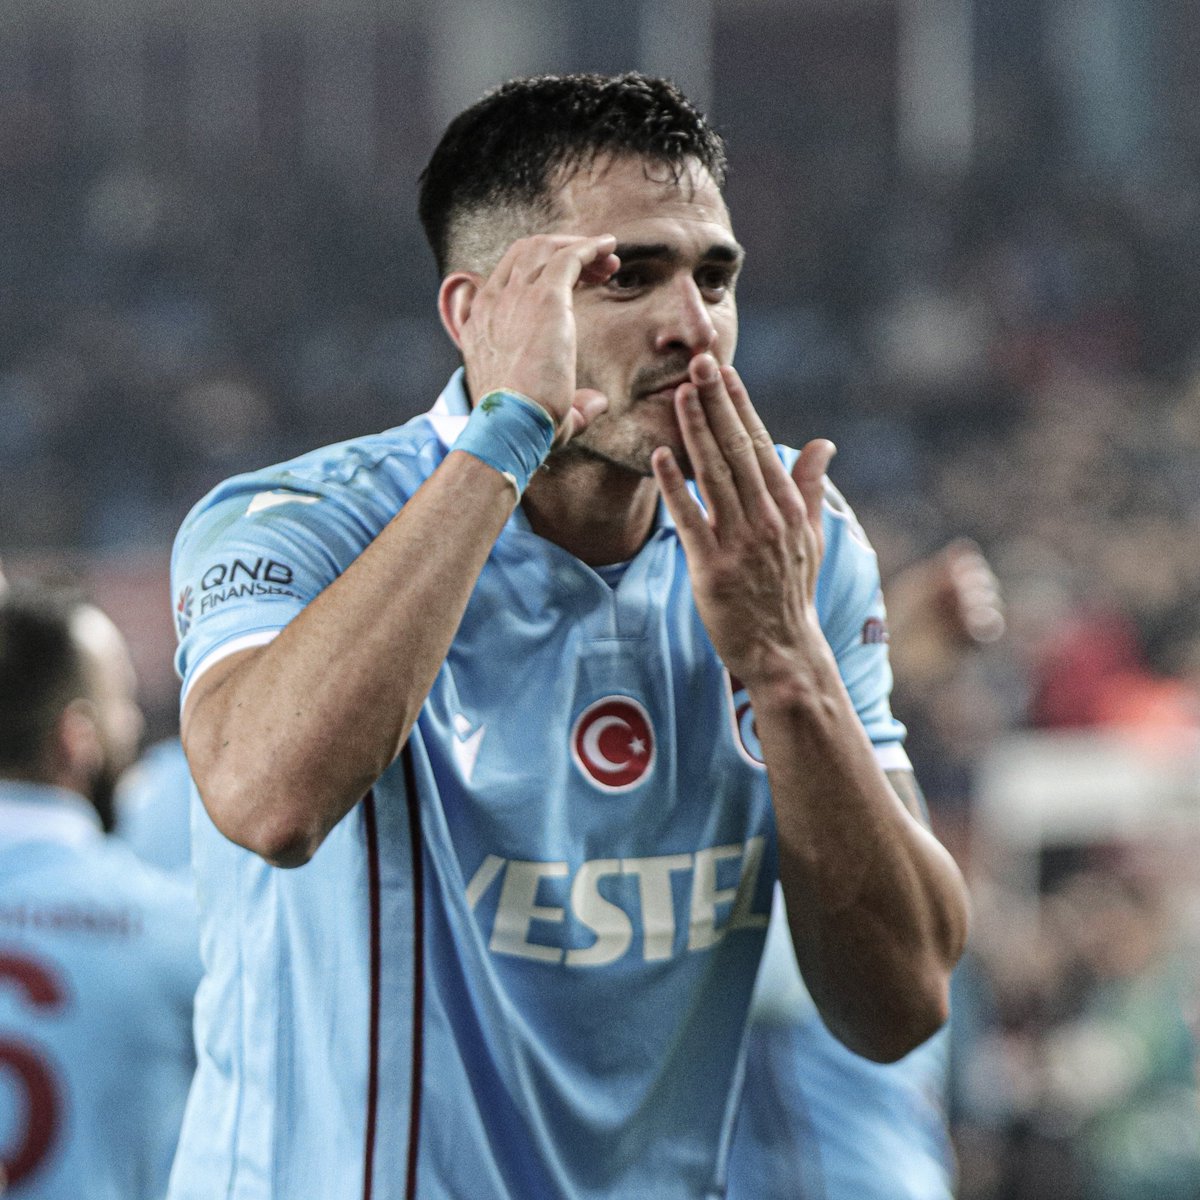 Trabzonsporlu oyuncuların ulaştığı en yüksek piyasa değeri: 

▪️Maxı Gomez: 40 milyon €
▪️Marc Bartra: 22 milyon €
▪️Uğurcan Çakır: 19 milyon € 
▪️Abdülkadir Ömür: 15 milyon €
▪️Edin Visca: 13 milyon €